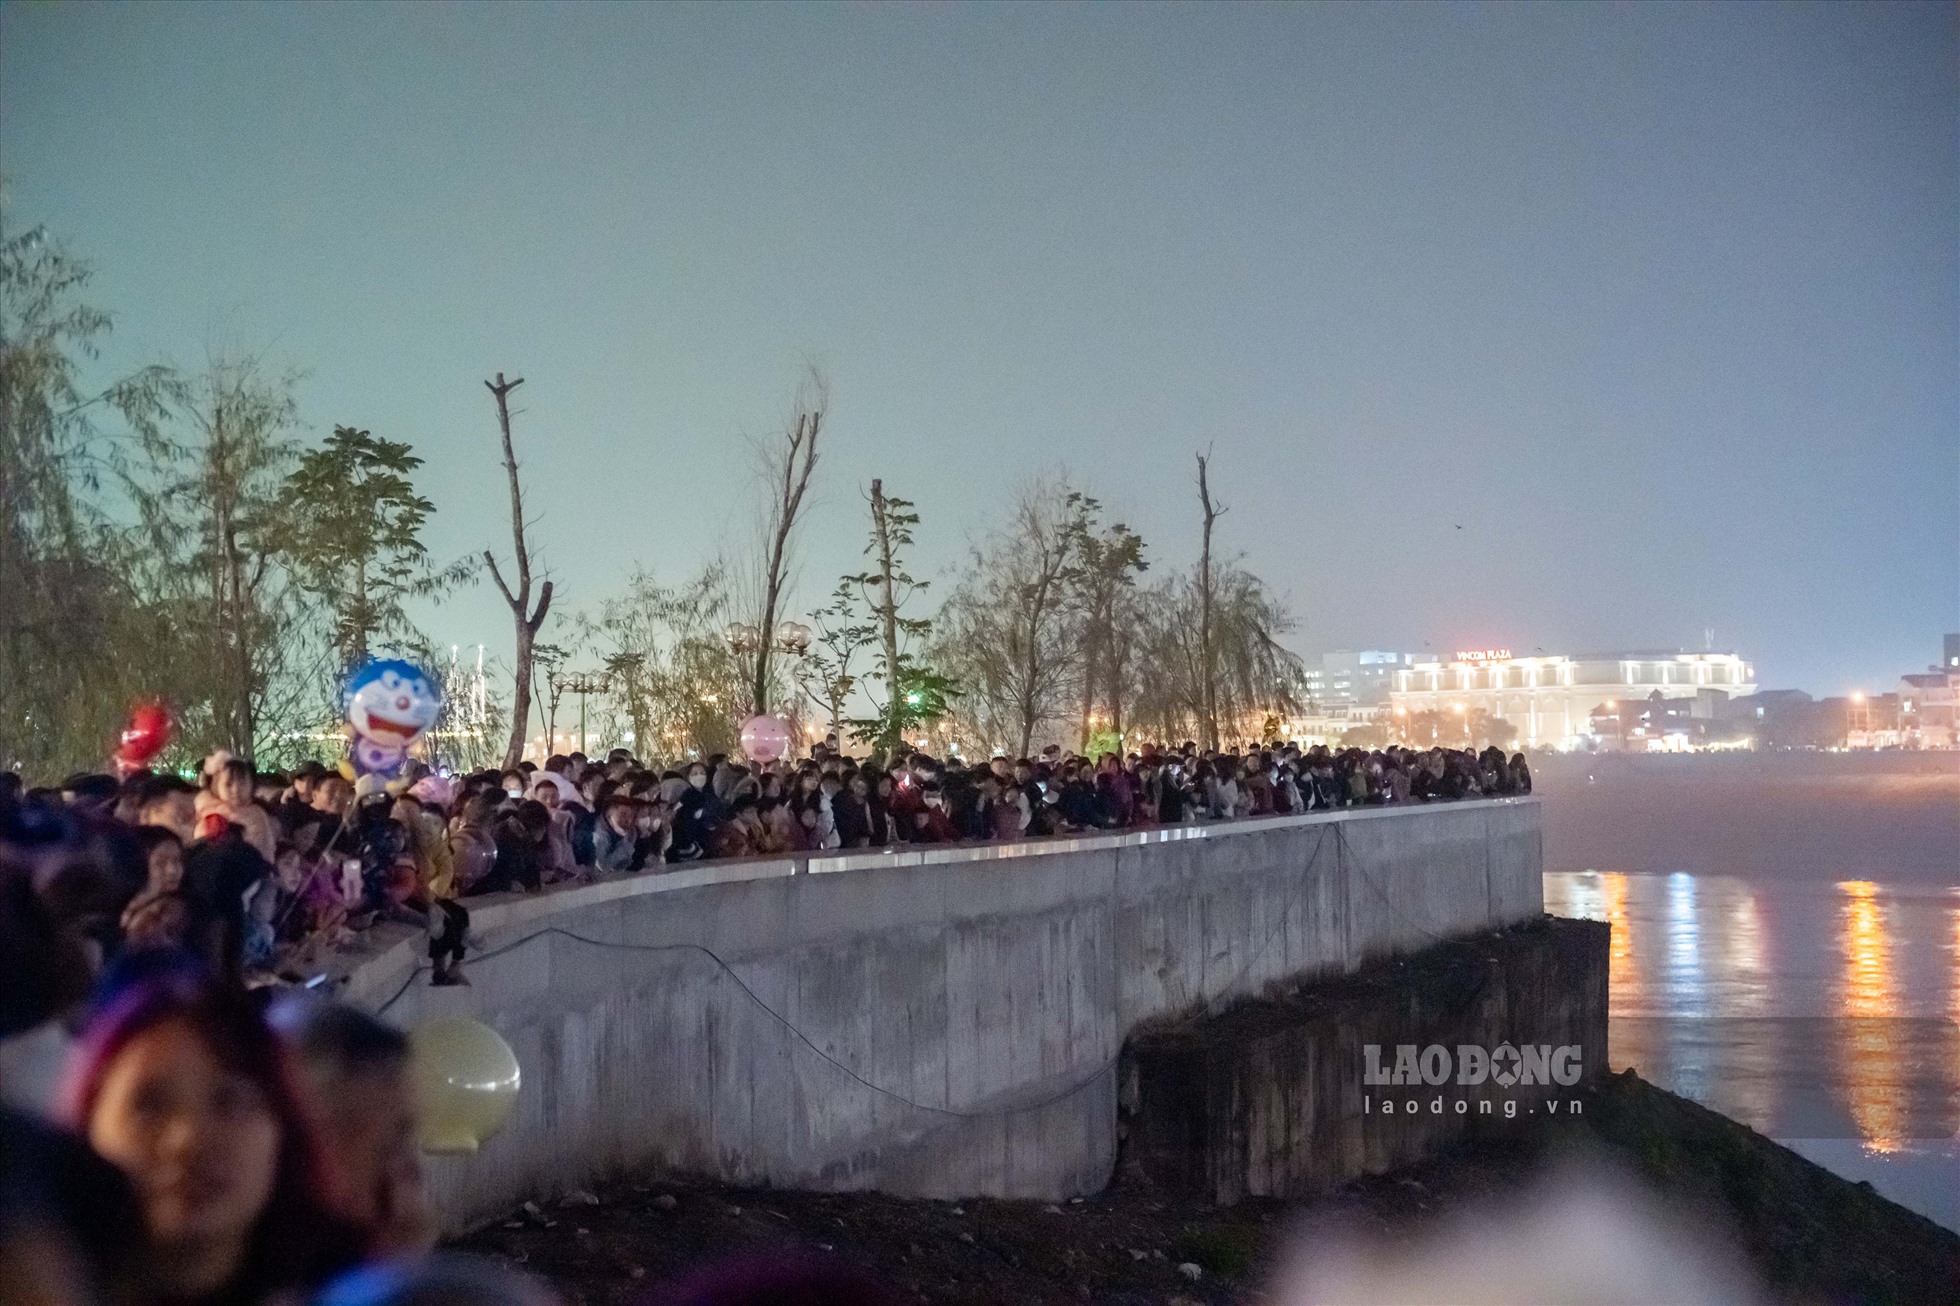 Dọc 2 bên bờ sông Đà, người dân đổ xô nhau đến thưởng thức màn lễ hội ánh sáng để chia tay năm 2022.